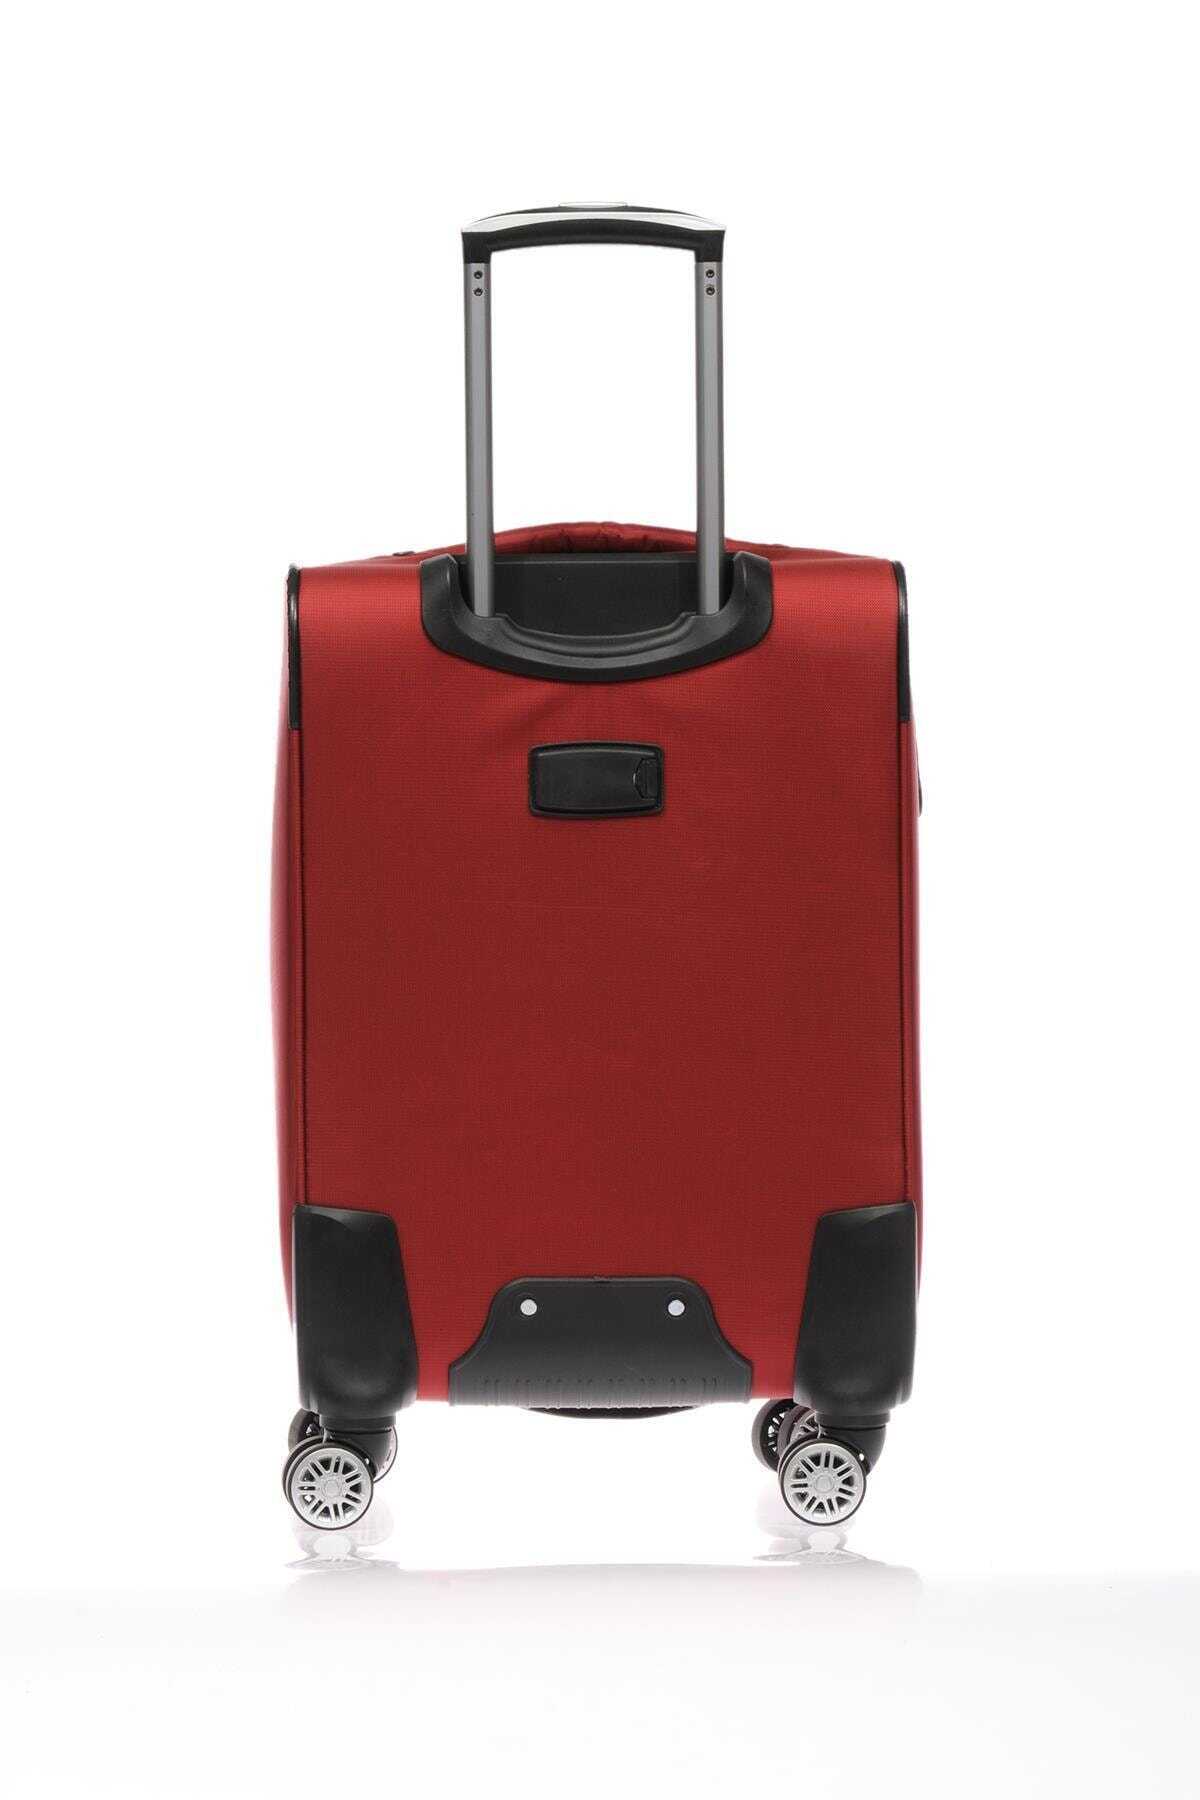 چمدان مسافرتی یونیسکس چرخ دار قرمز برند Fossil